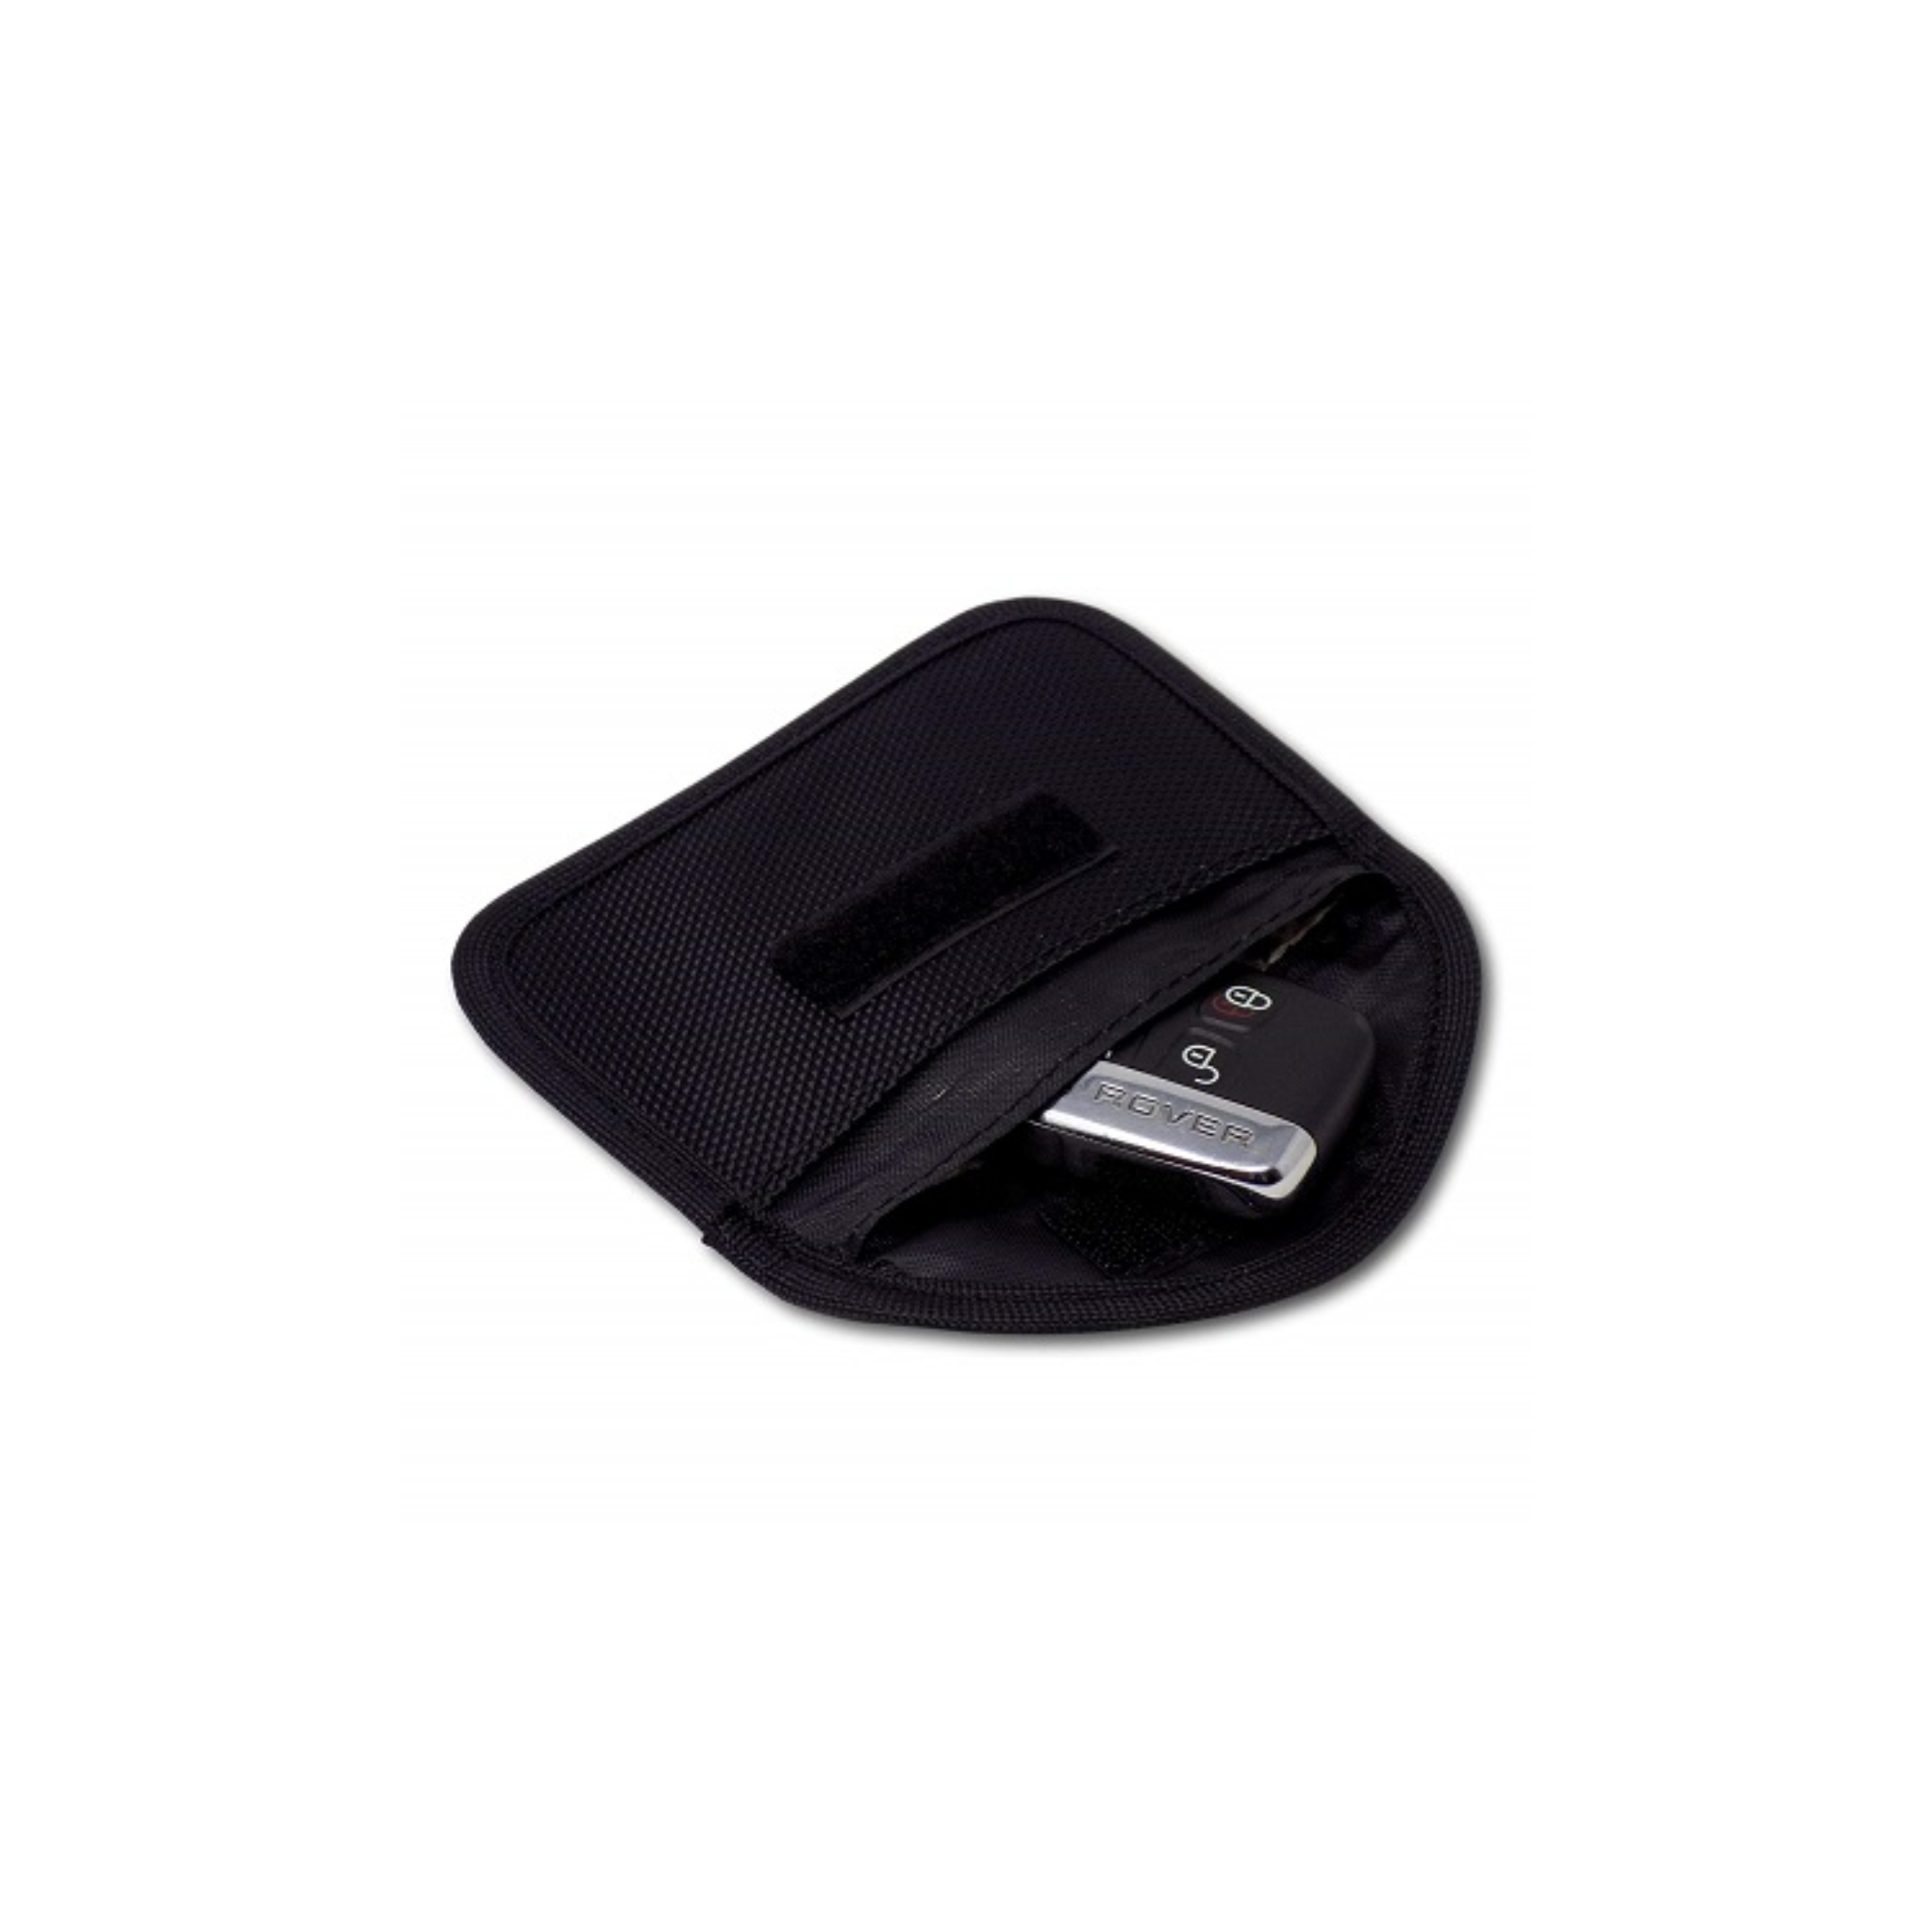 Skimstop minifodral - Skyddar din bilnyckel